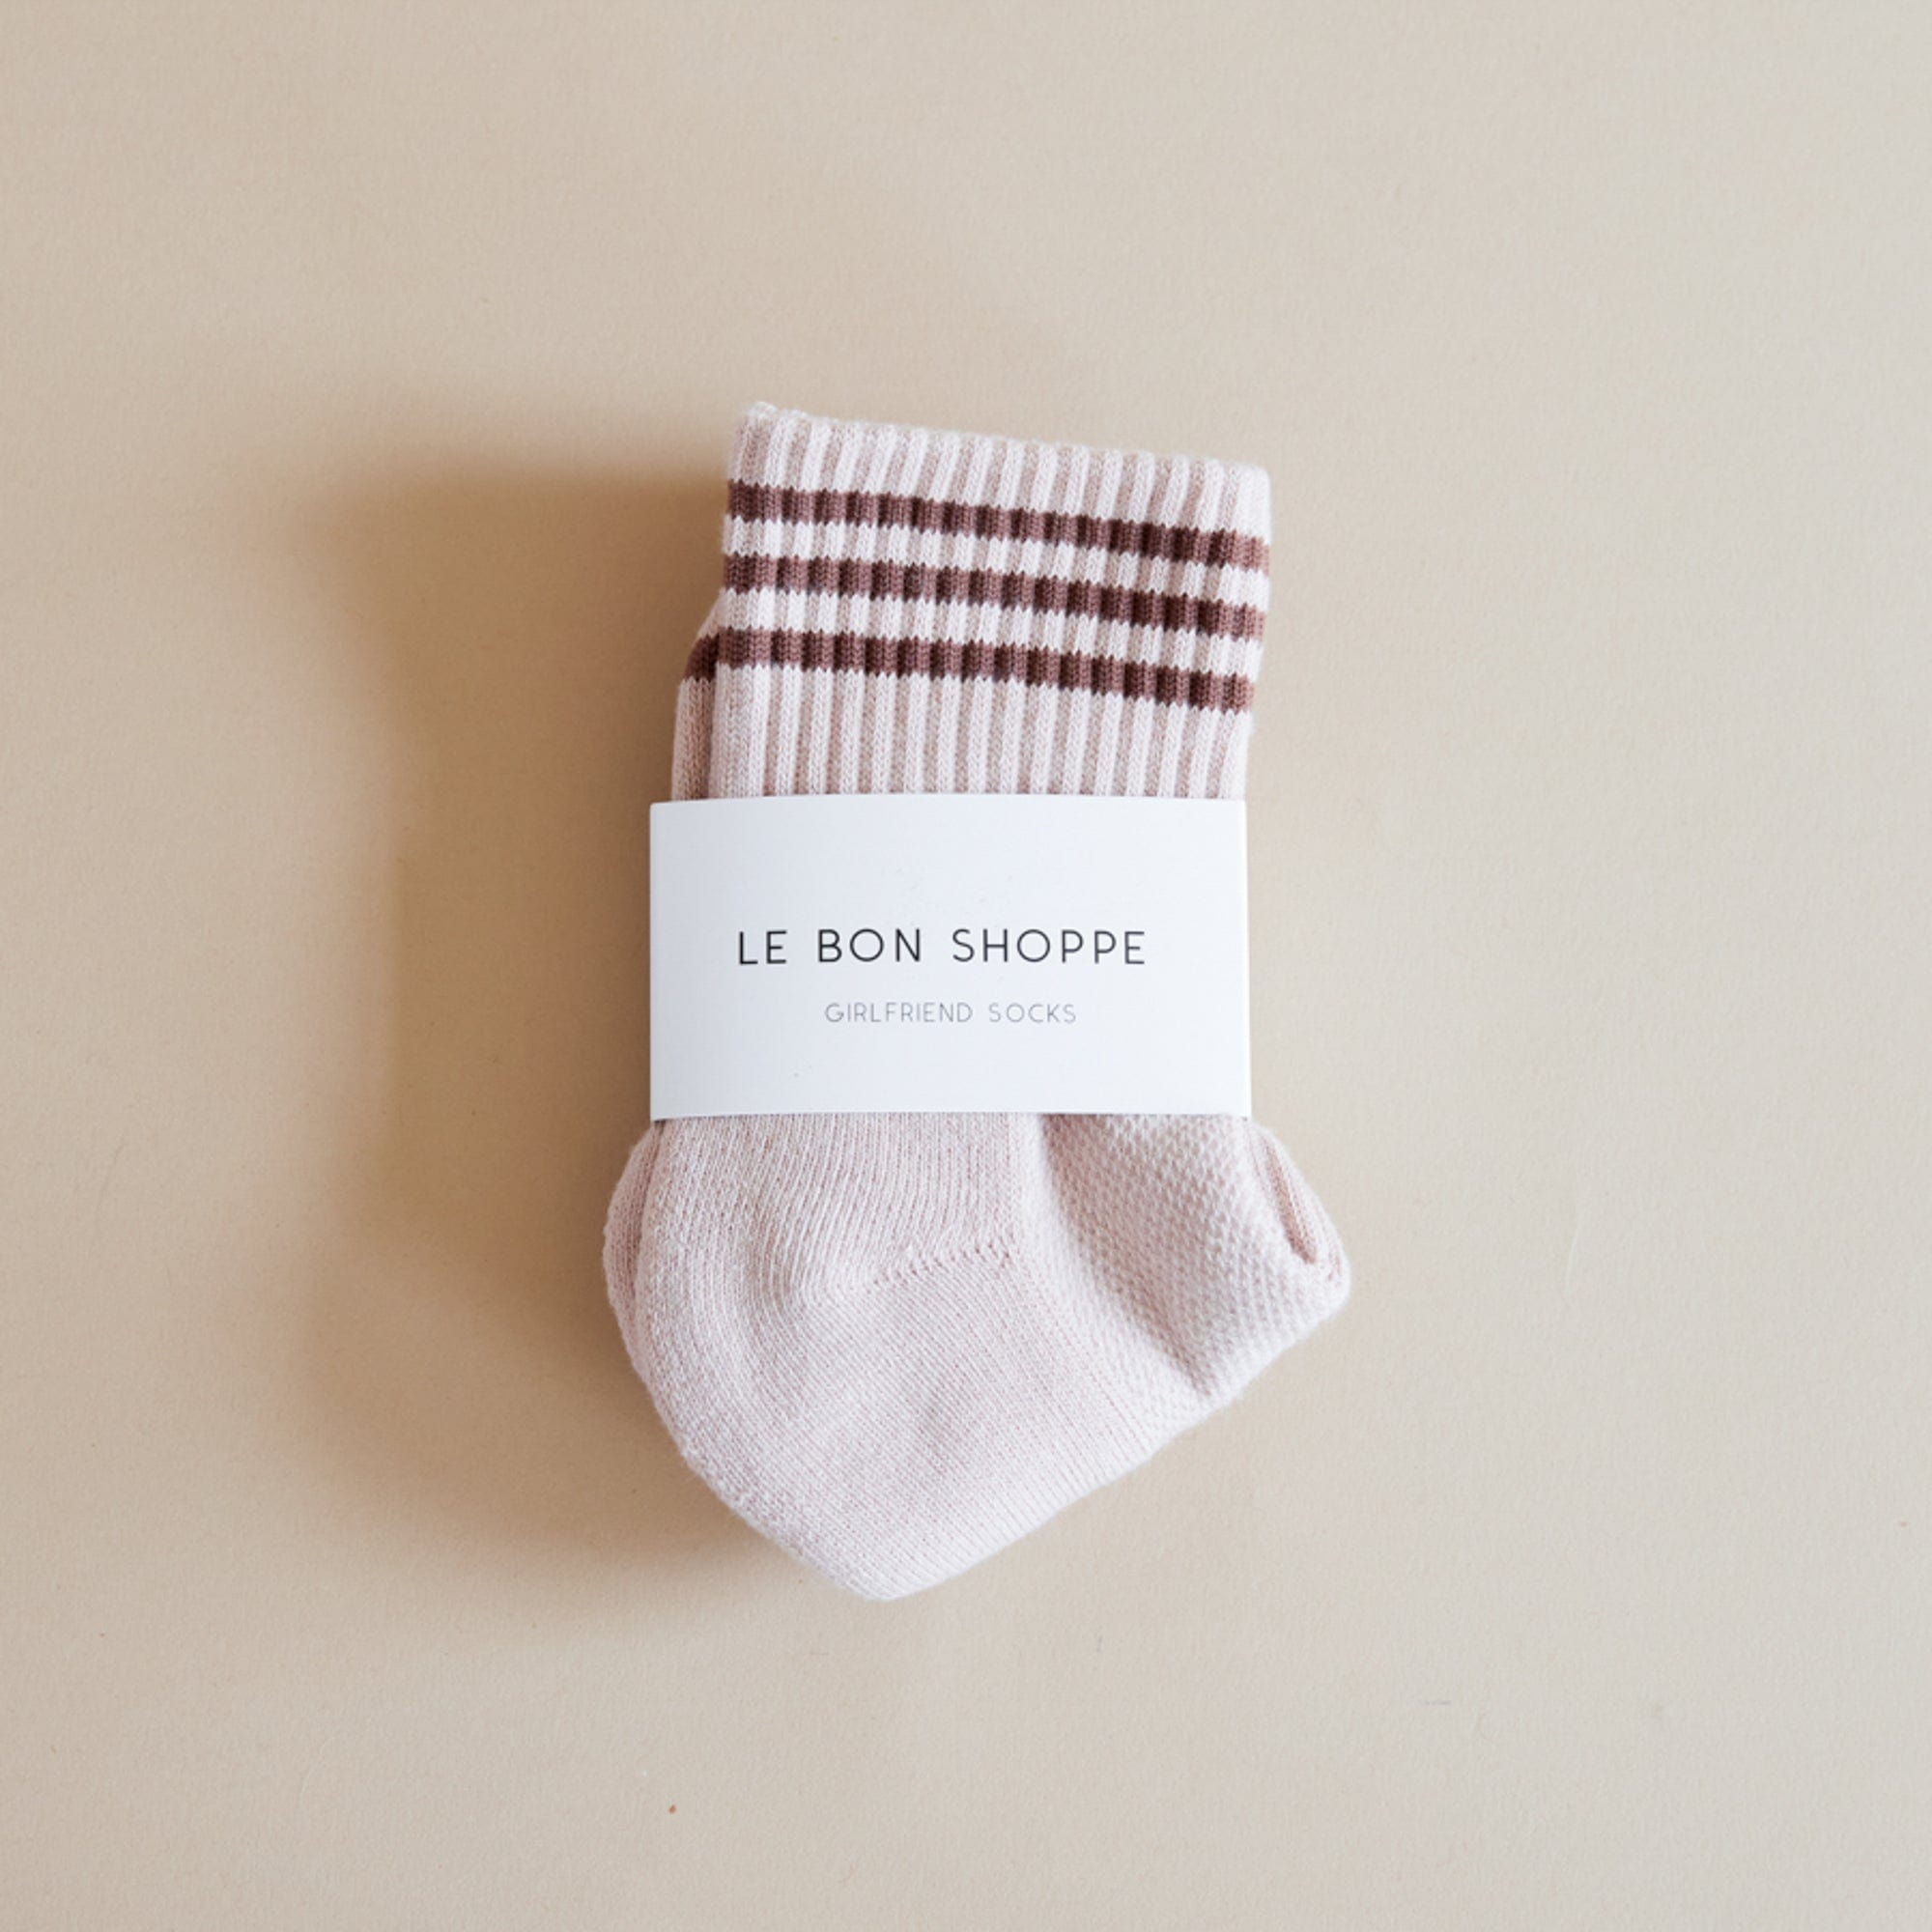 Le Bon Shoppe Socks Bellini Le Bon "Girlfriend" Socks